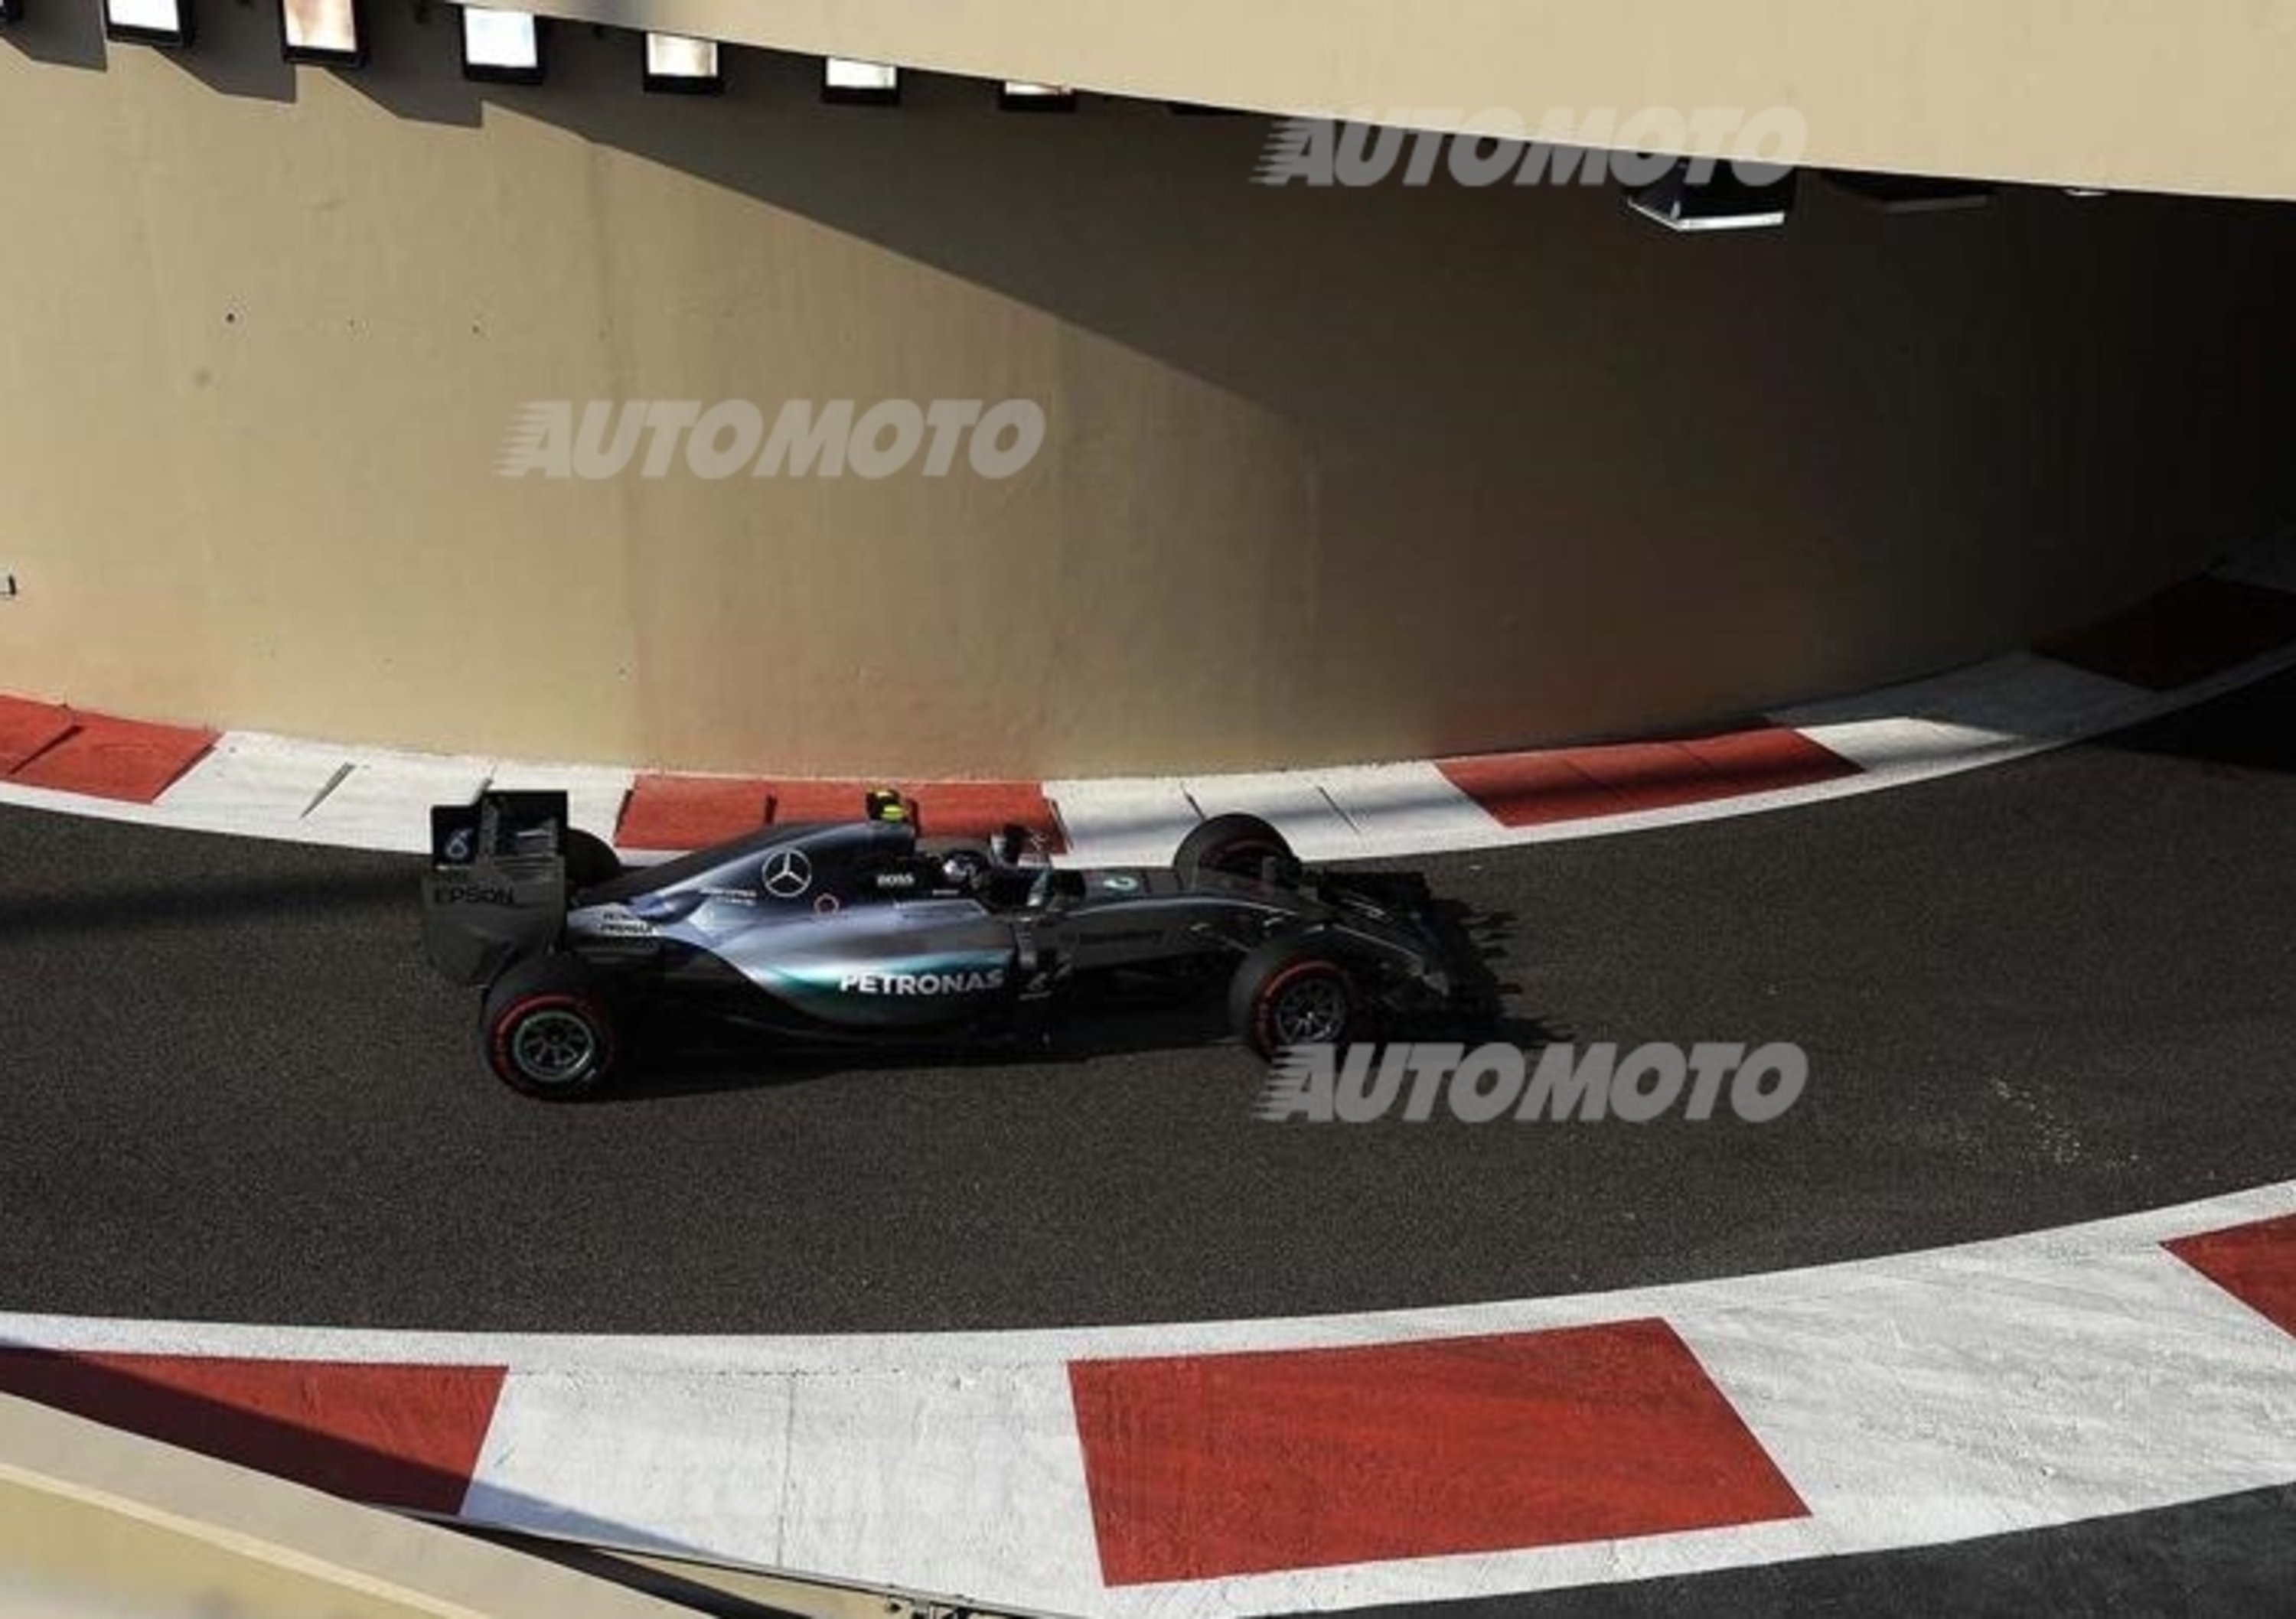 F1, Gp Abu Dhabi 2015, Rosberg: &laquo;Contento della conclusione della mia stagione&raquo;